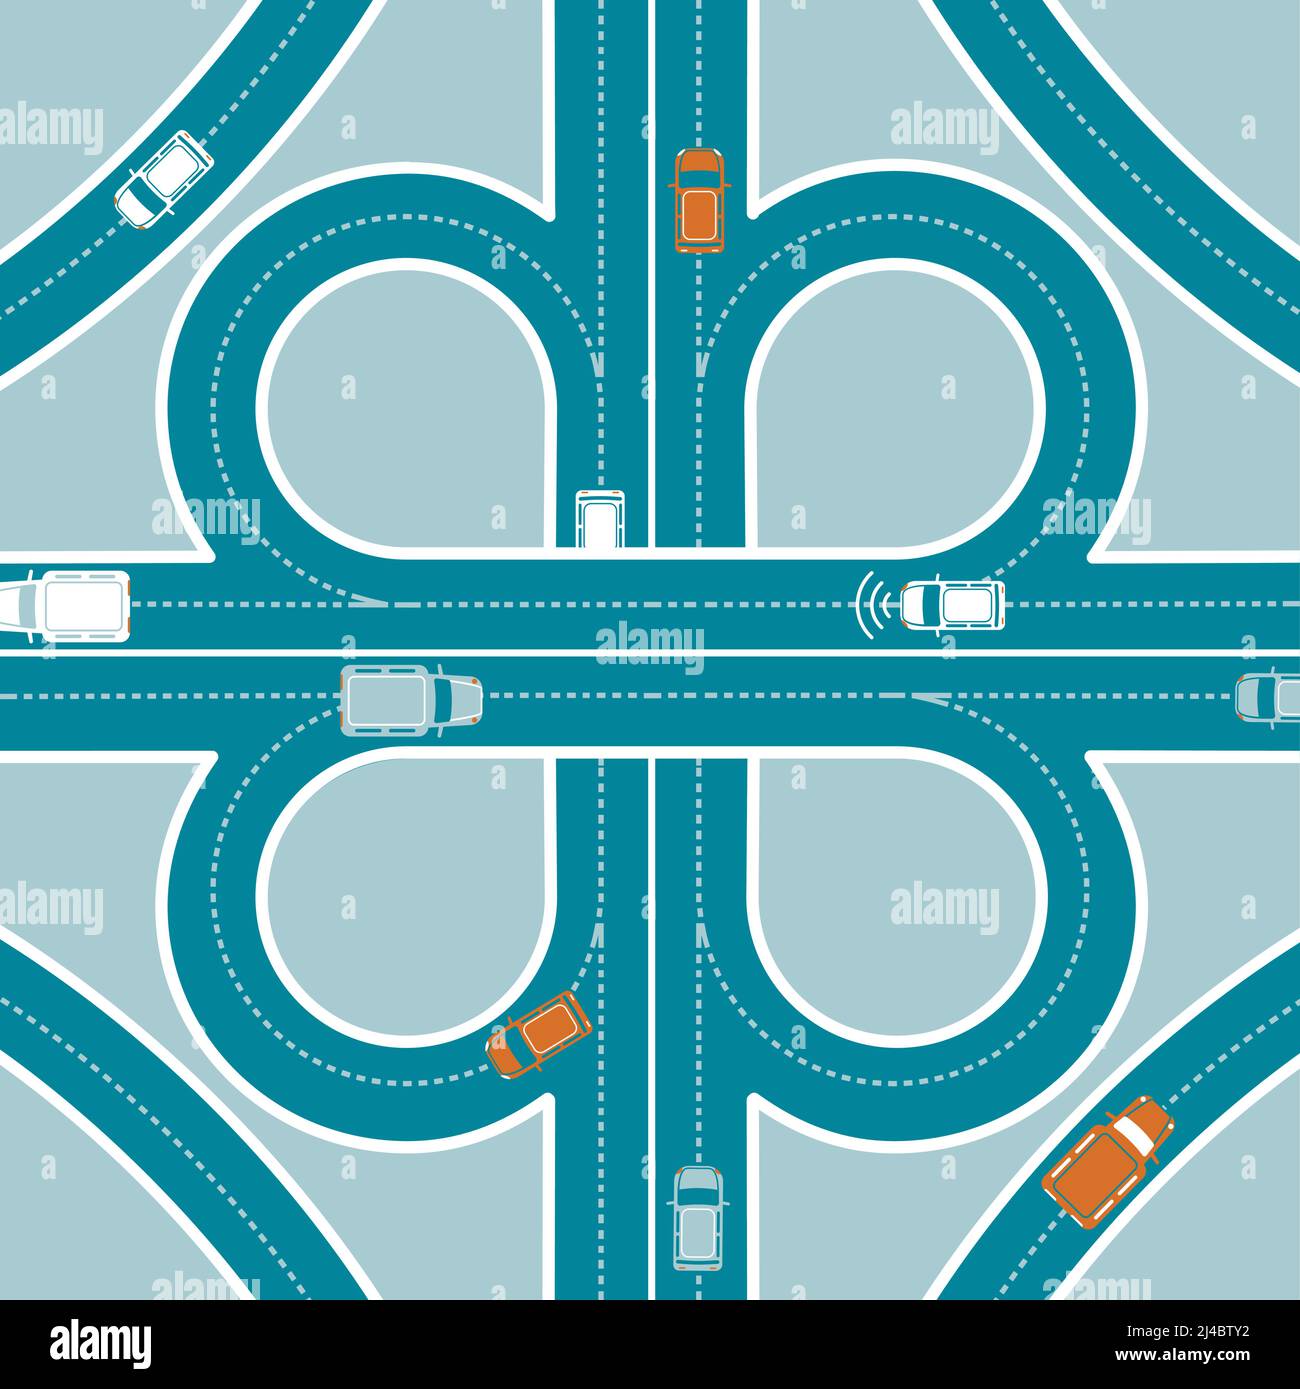 GPS coche de vigilancia concepto de vista superior con el tráfico de transporte activado ilustración del vector de cruce de carreteras Ilustración del Vector